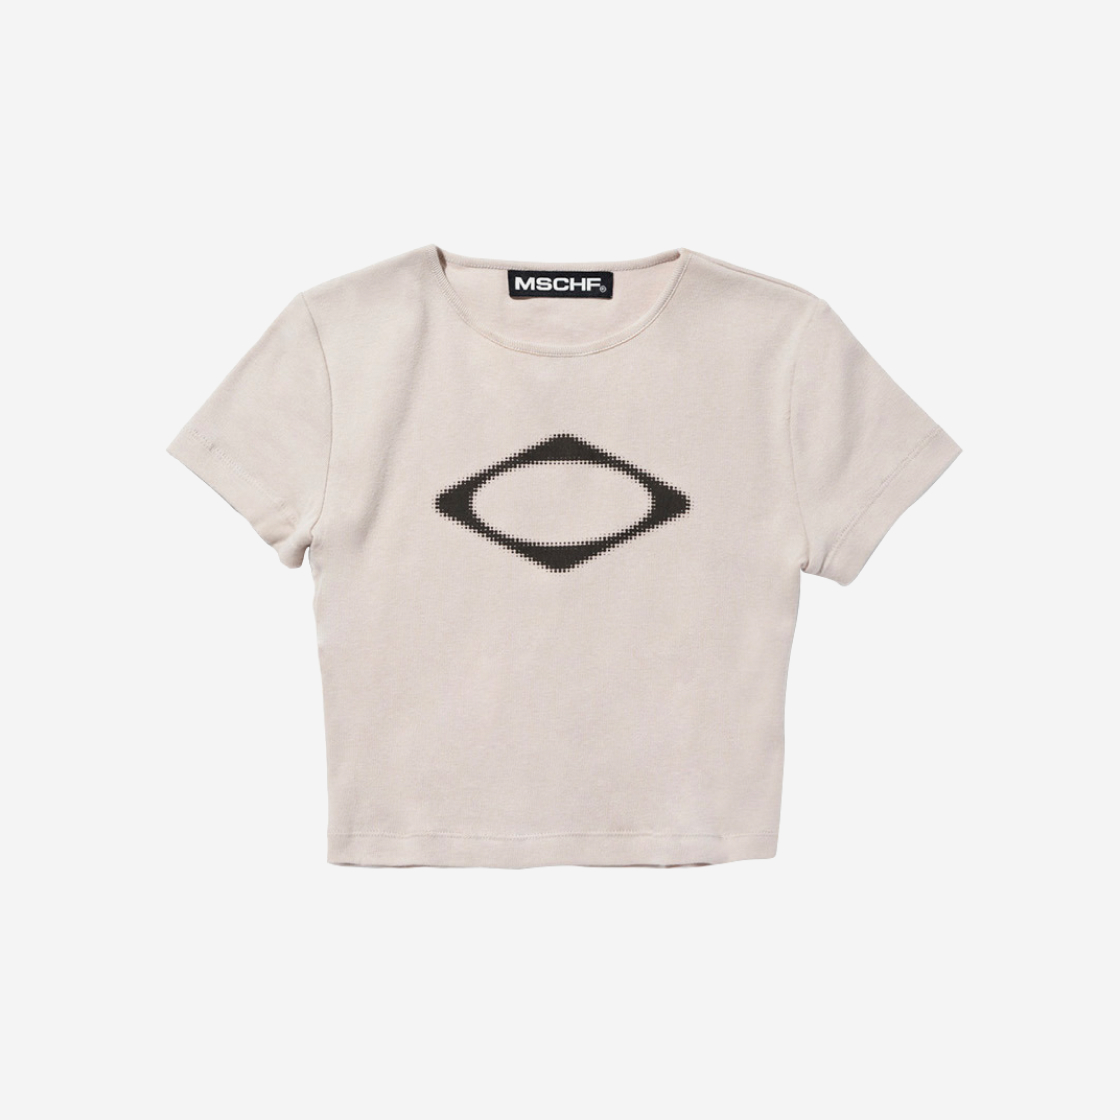 (W) Mischief Rhombus Blur T-Shirt Mini Light Beige